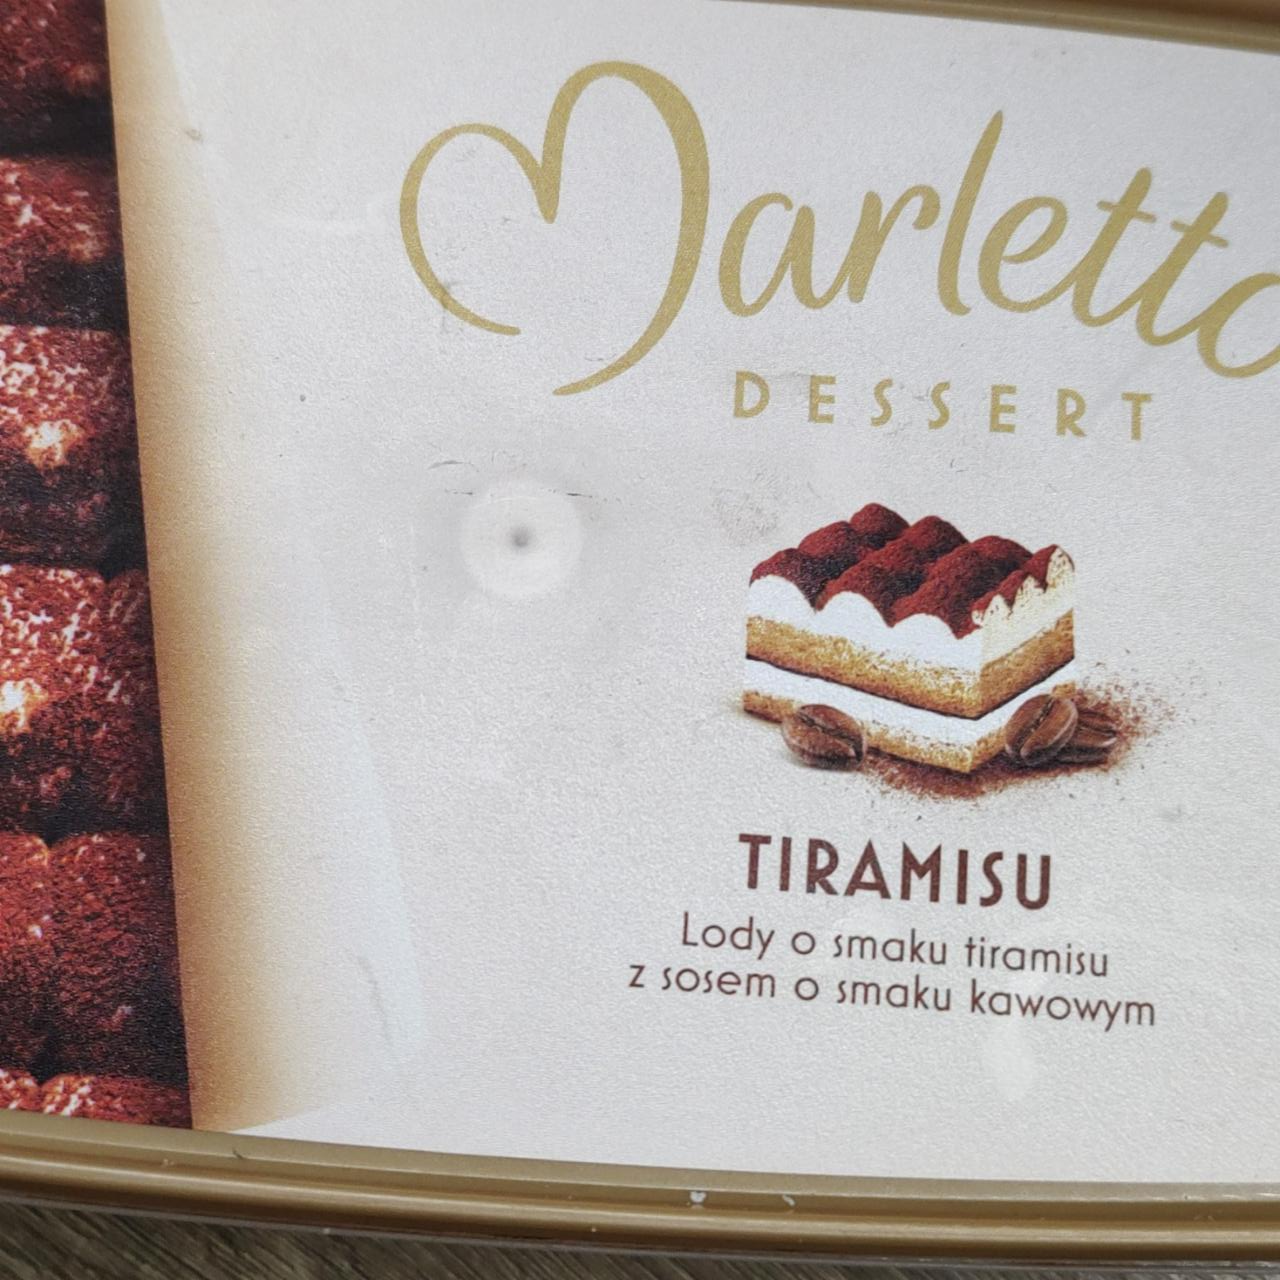 Zdjęcia - Tiramisu Lody o smaku tiramisu z sosem o smaku kawowym Marletto Dessert